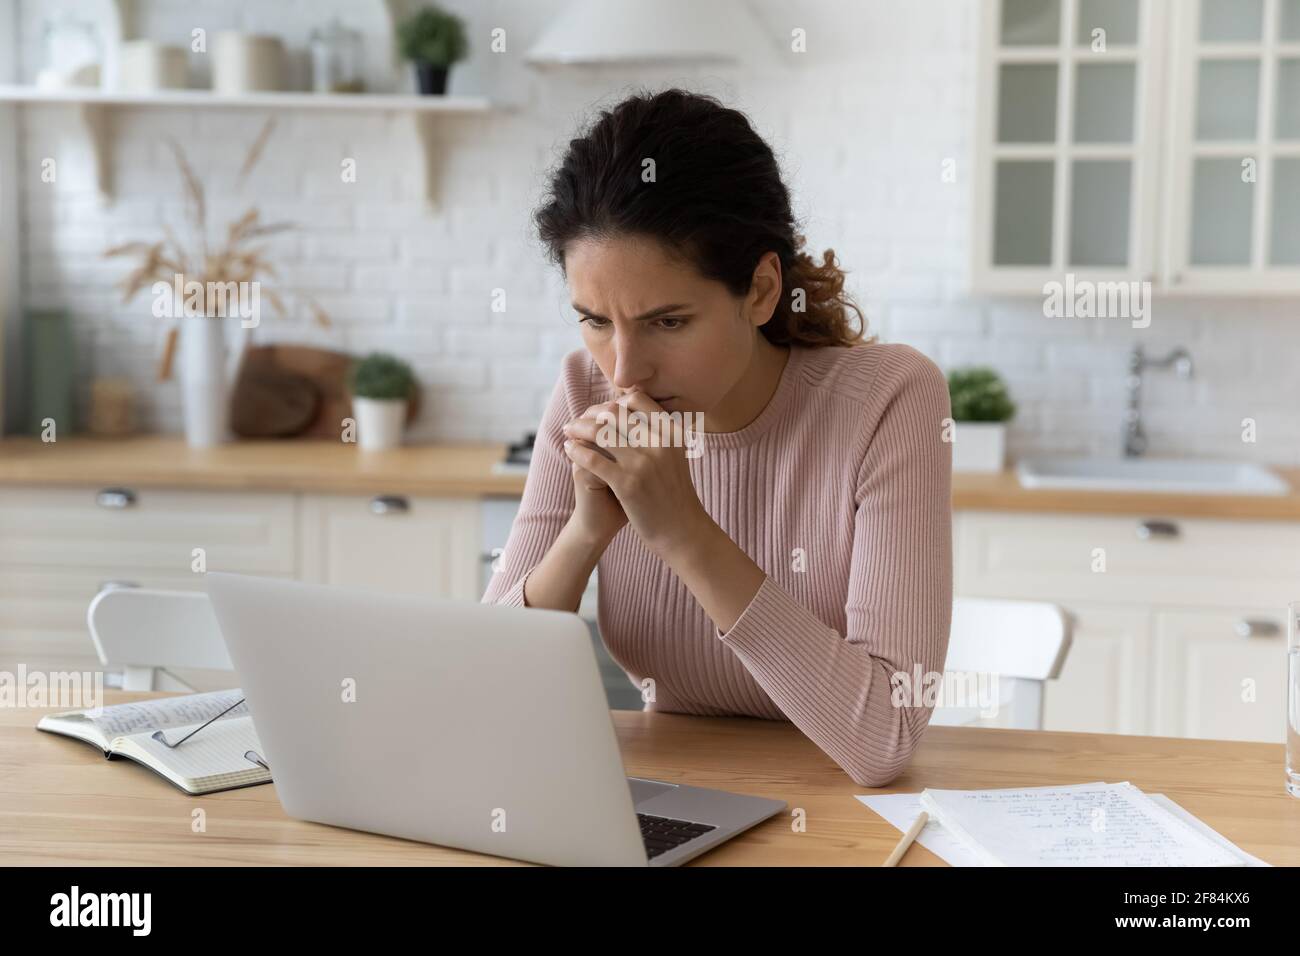 Ängstliche lateinische Frau sitzen am Küchenarbeitsplatz treffen schwierige Problem Stockfoto